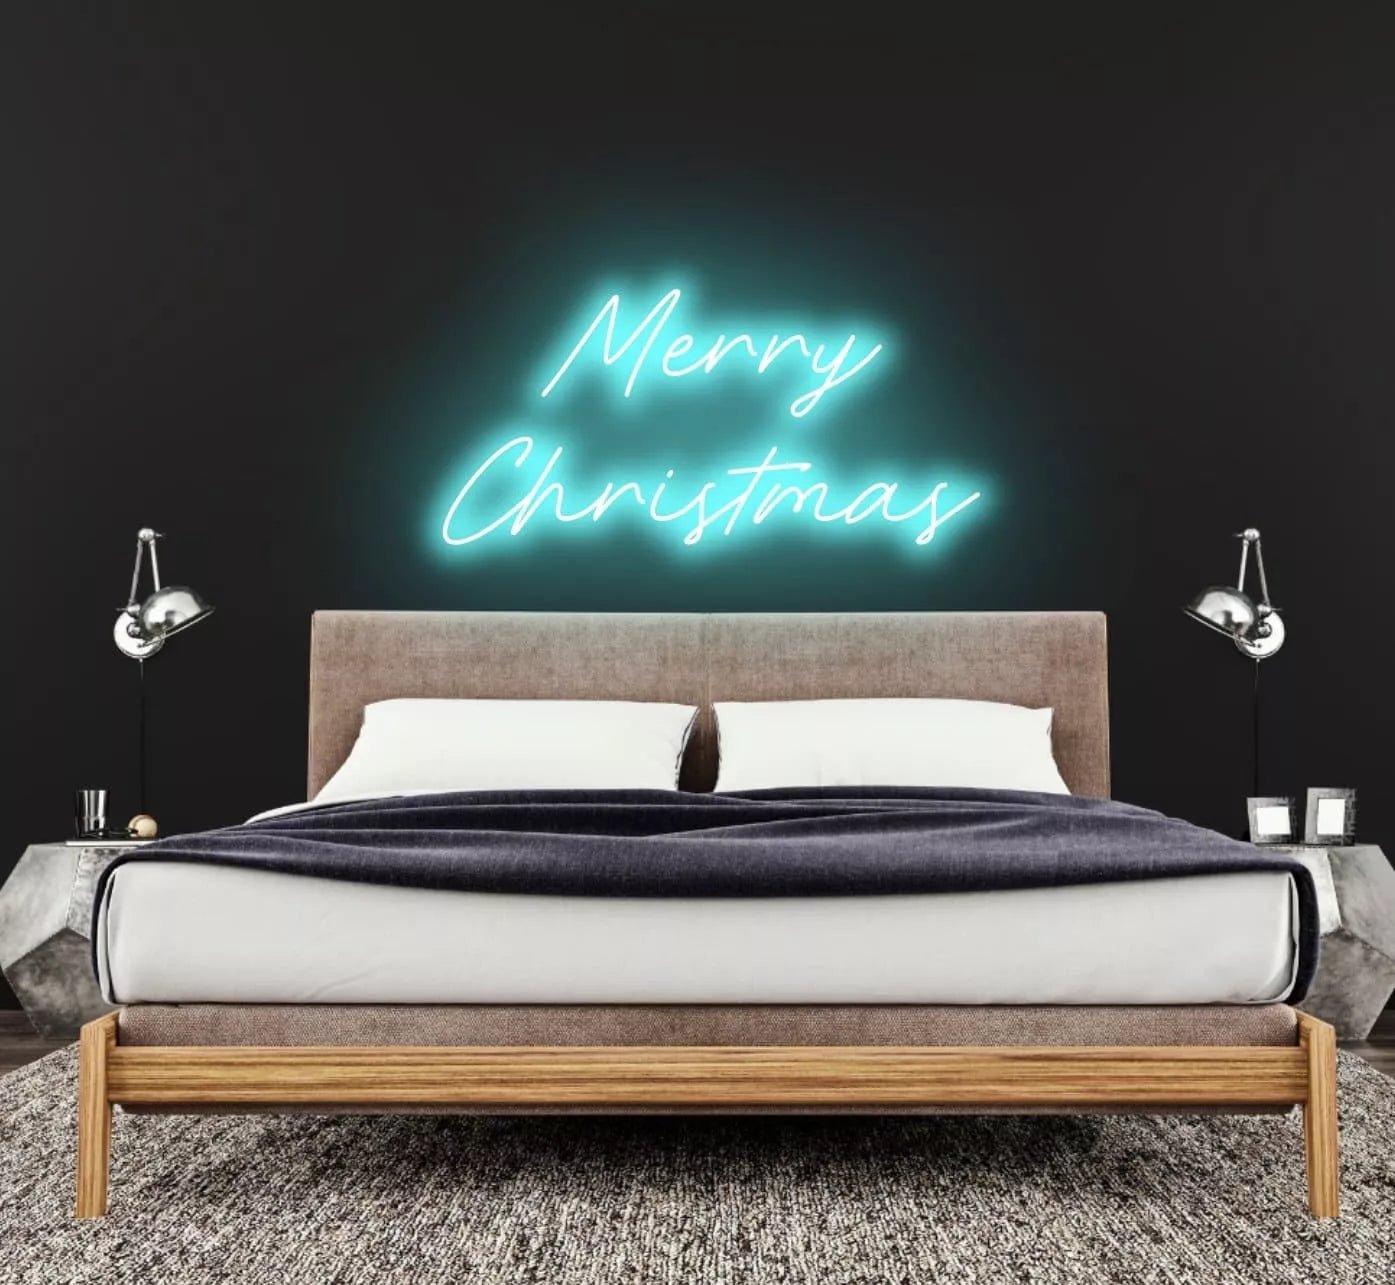 "Merry Christmas" Neon Sign - NeonHub